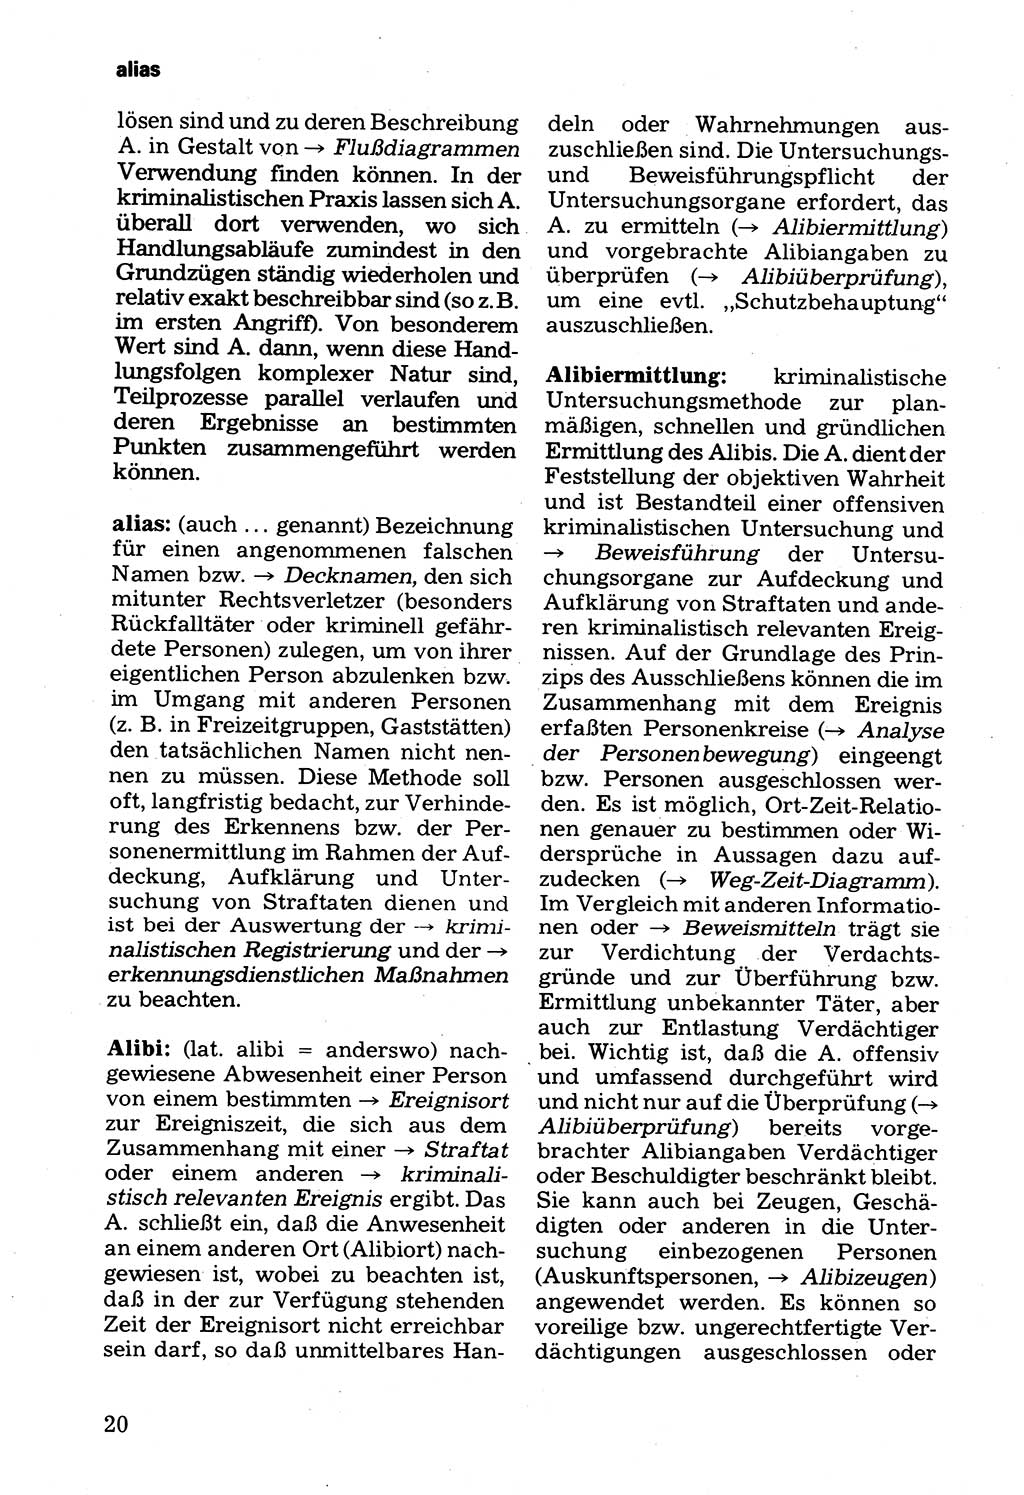 Wörterbuch der sozialistischen Kriminalistik [Deutsche Demokratische Republik (DDR)] 1981, Seite 20 (Wb. soz. Krim. DDR 1981, S. 20)